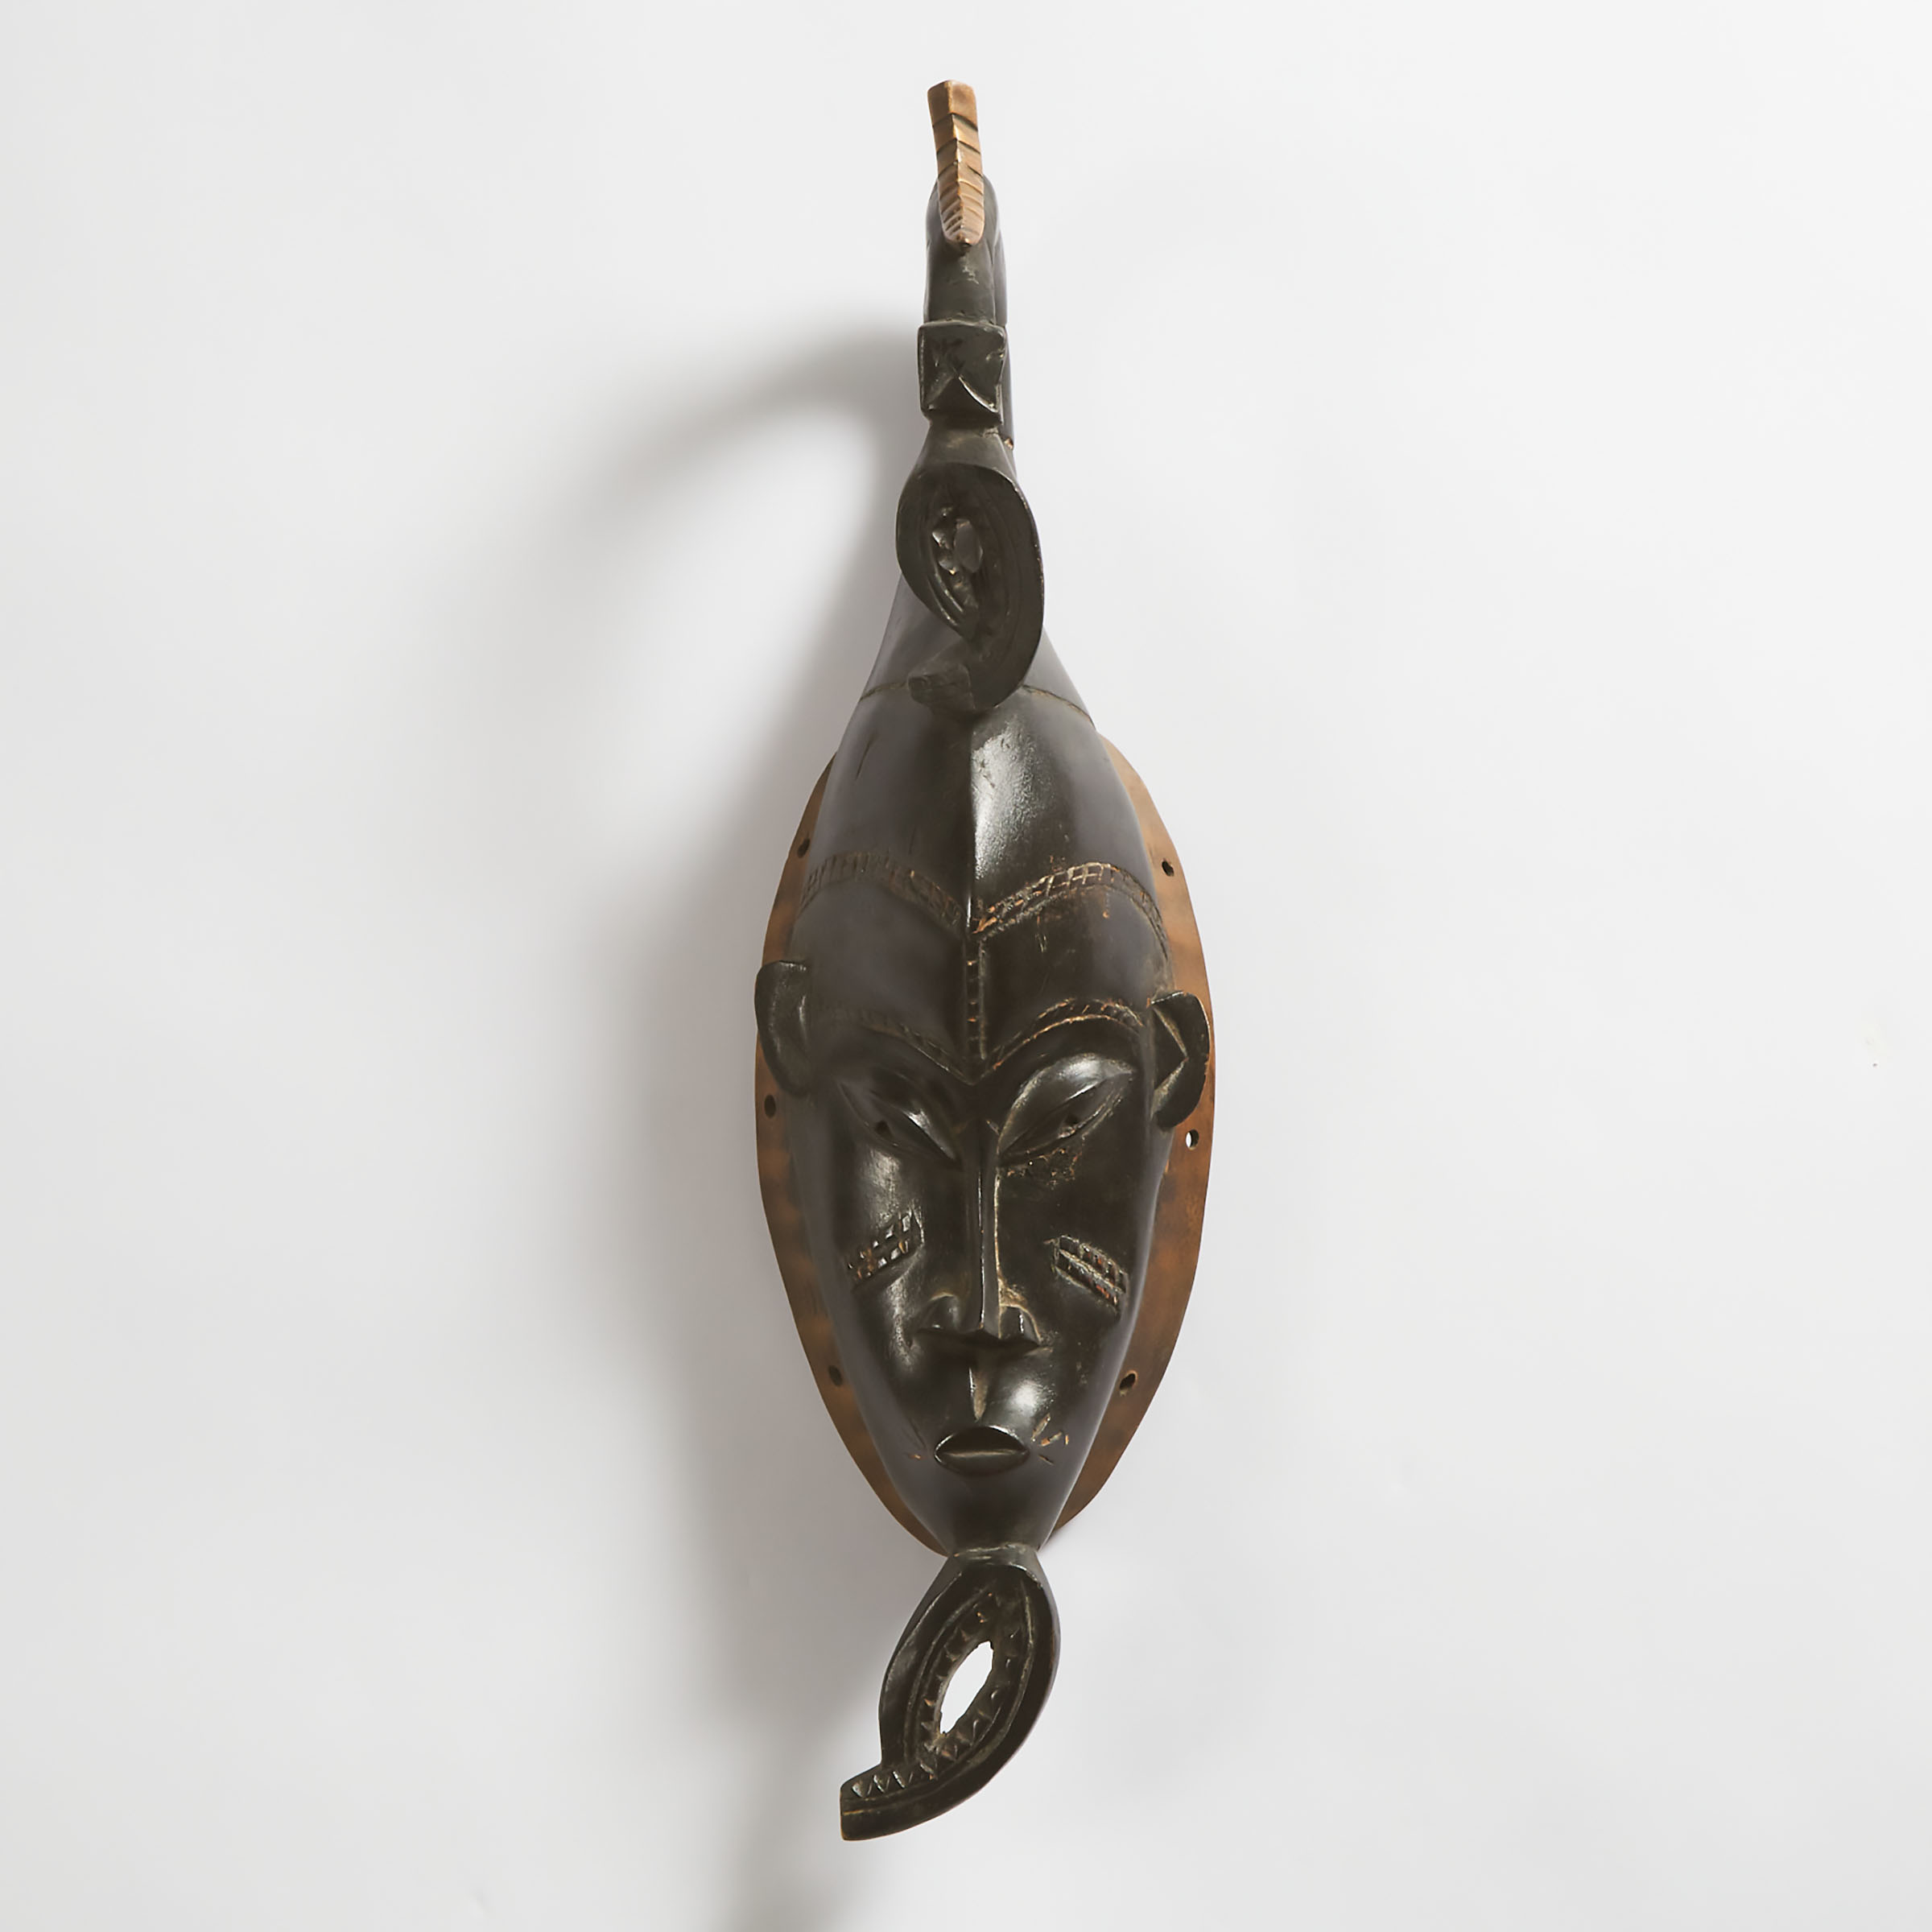 Modern Guro Mask, Ivory Coast, West Africa